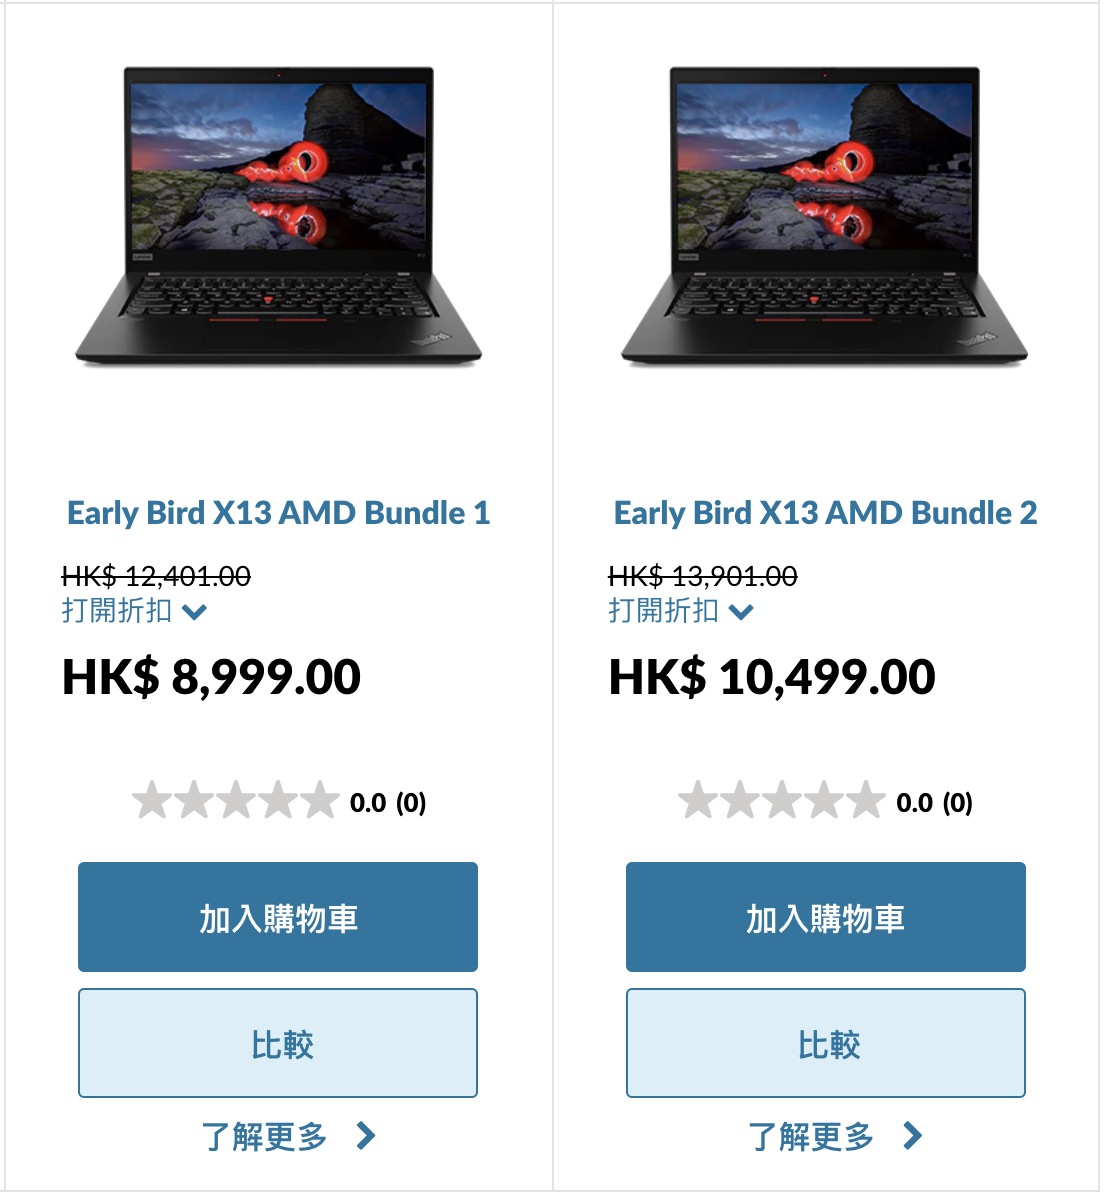 兩個型號的 ThinkPad X13 AMD 套裝都附有 24" 顯示器，折扣達 $3,402 。